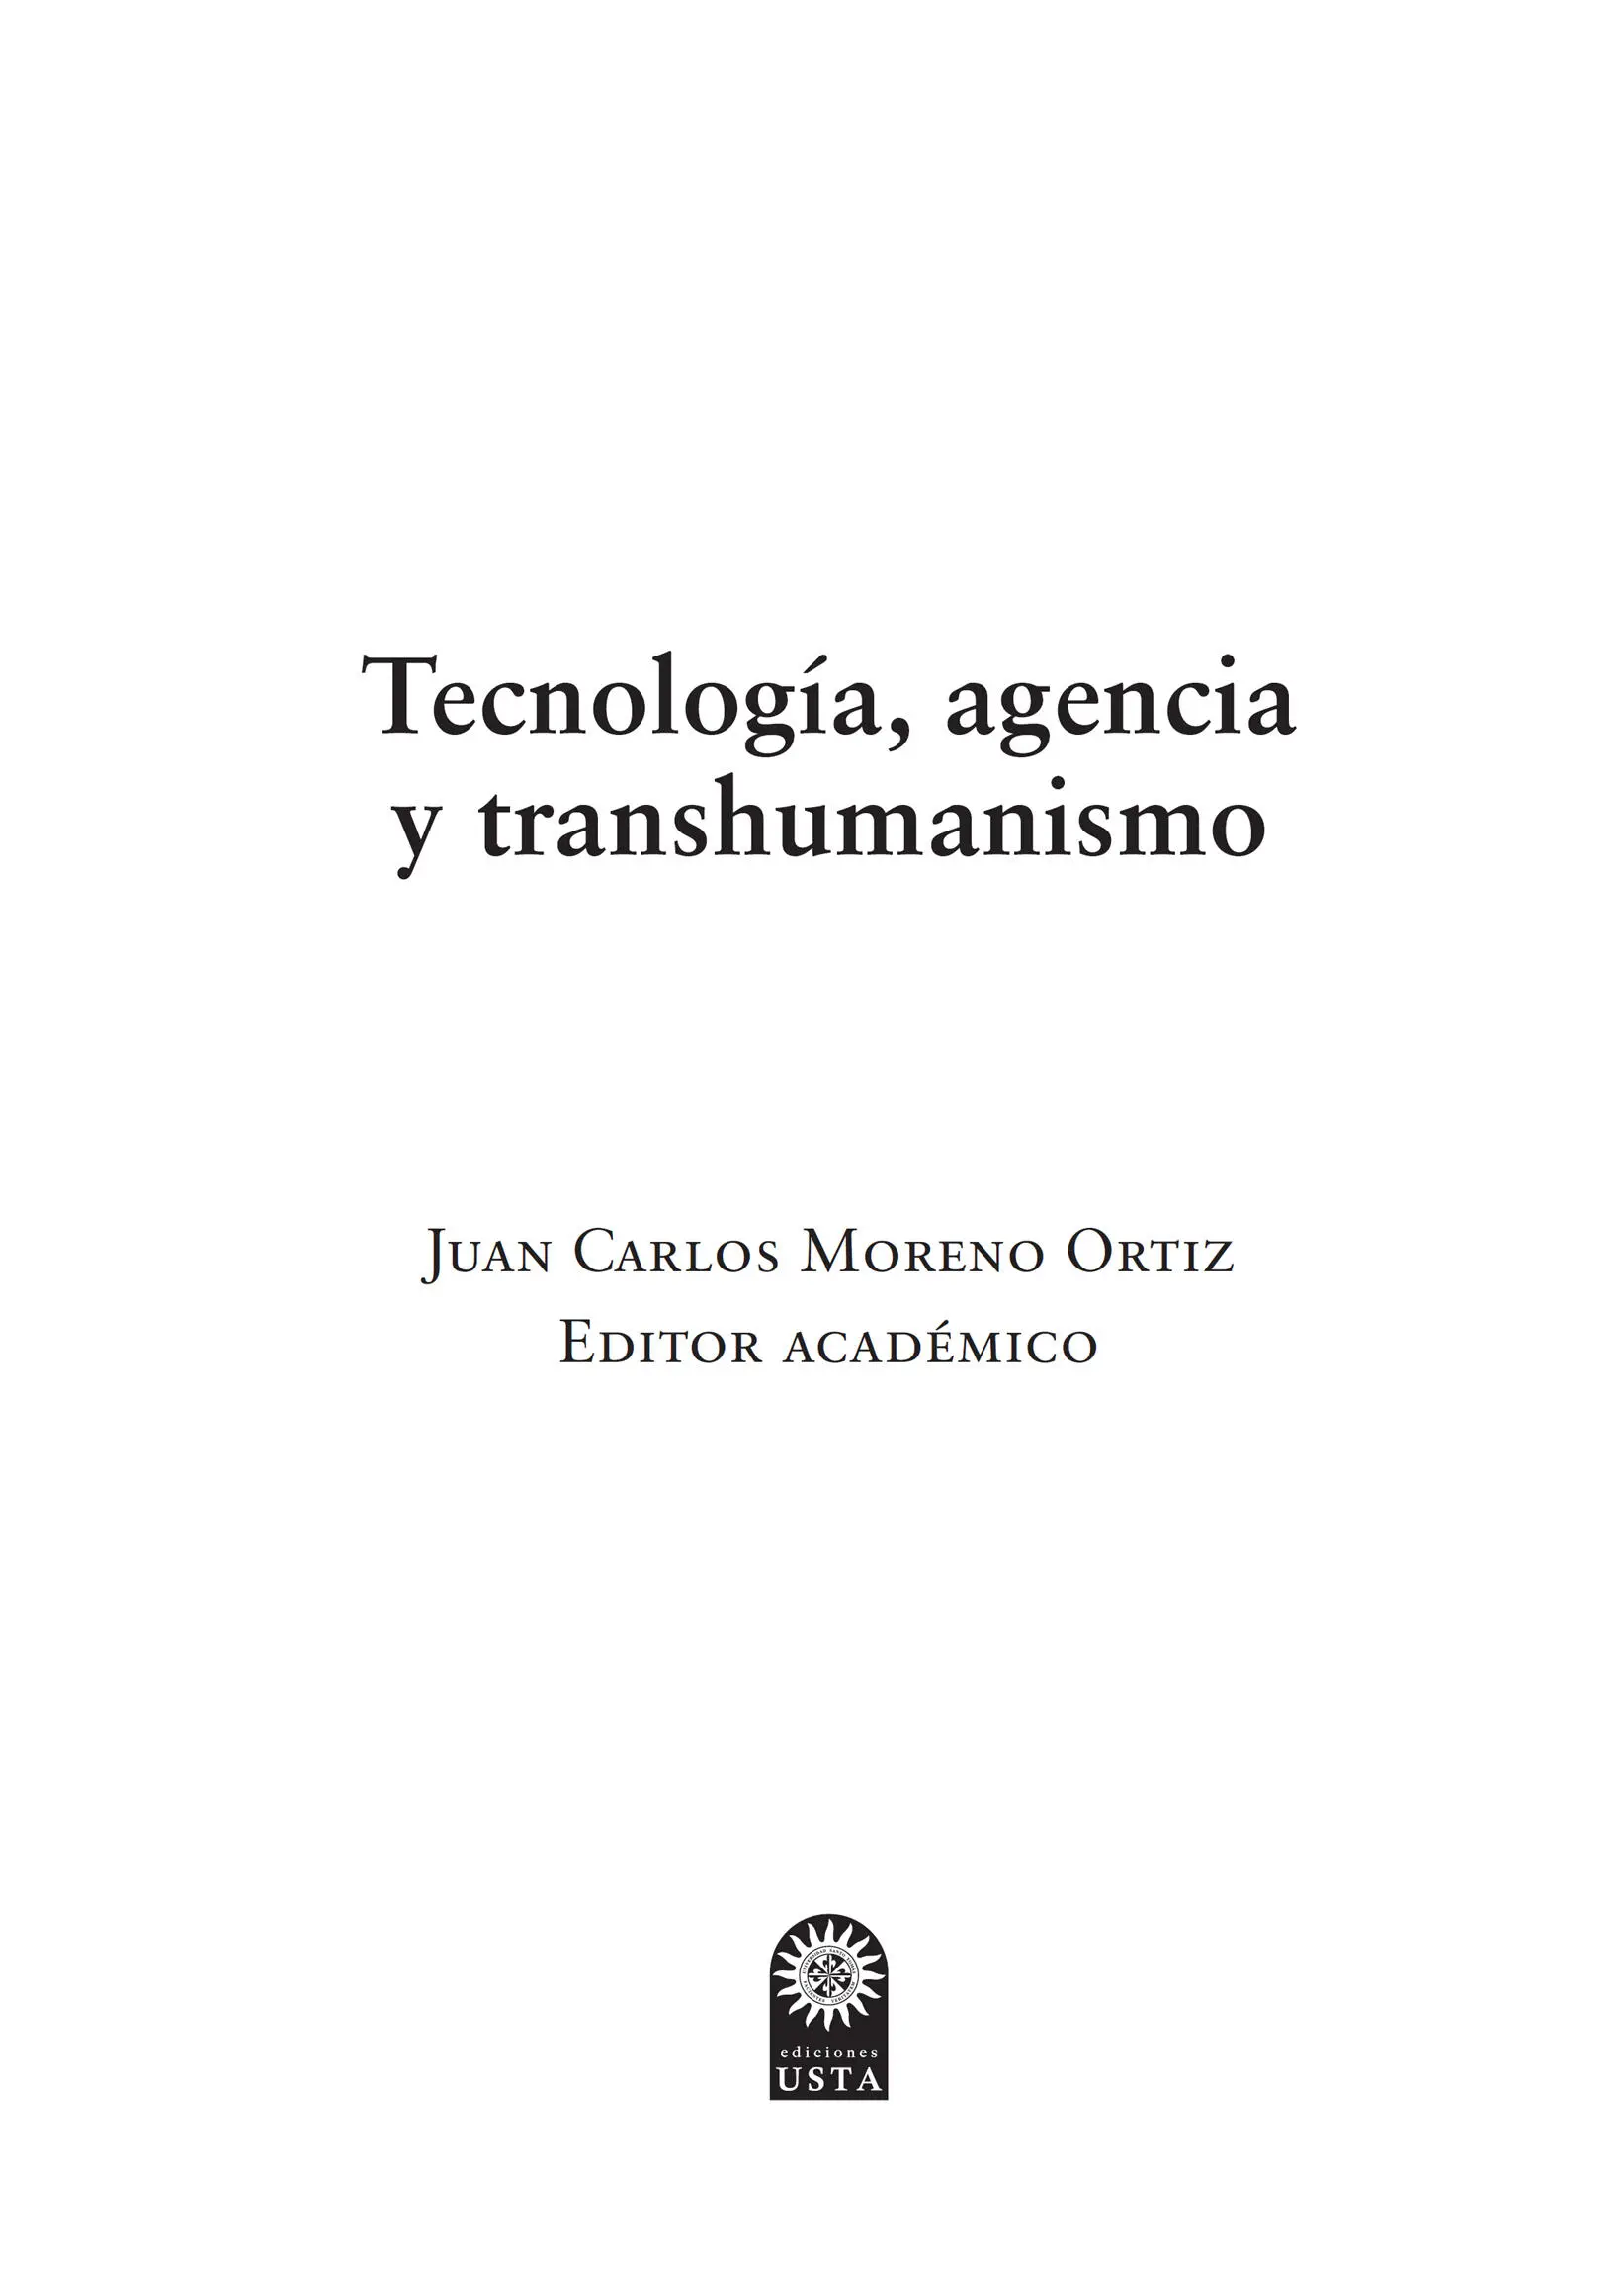 Moreno Ortiz Juan Carlos Tecnología agencia y transhumanismo Juan Carlos - фото 2